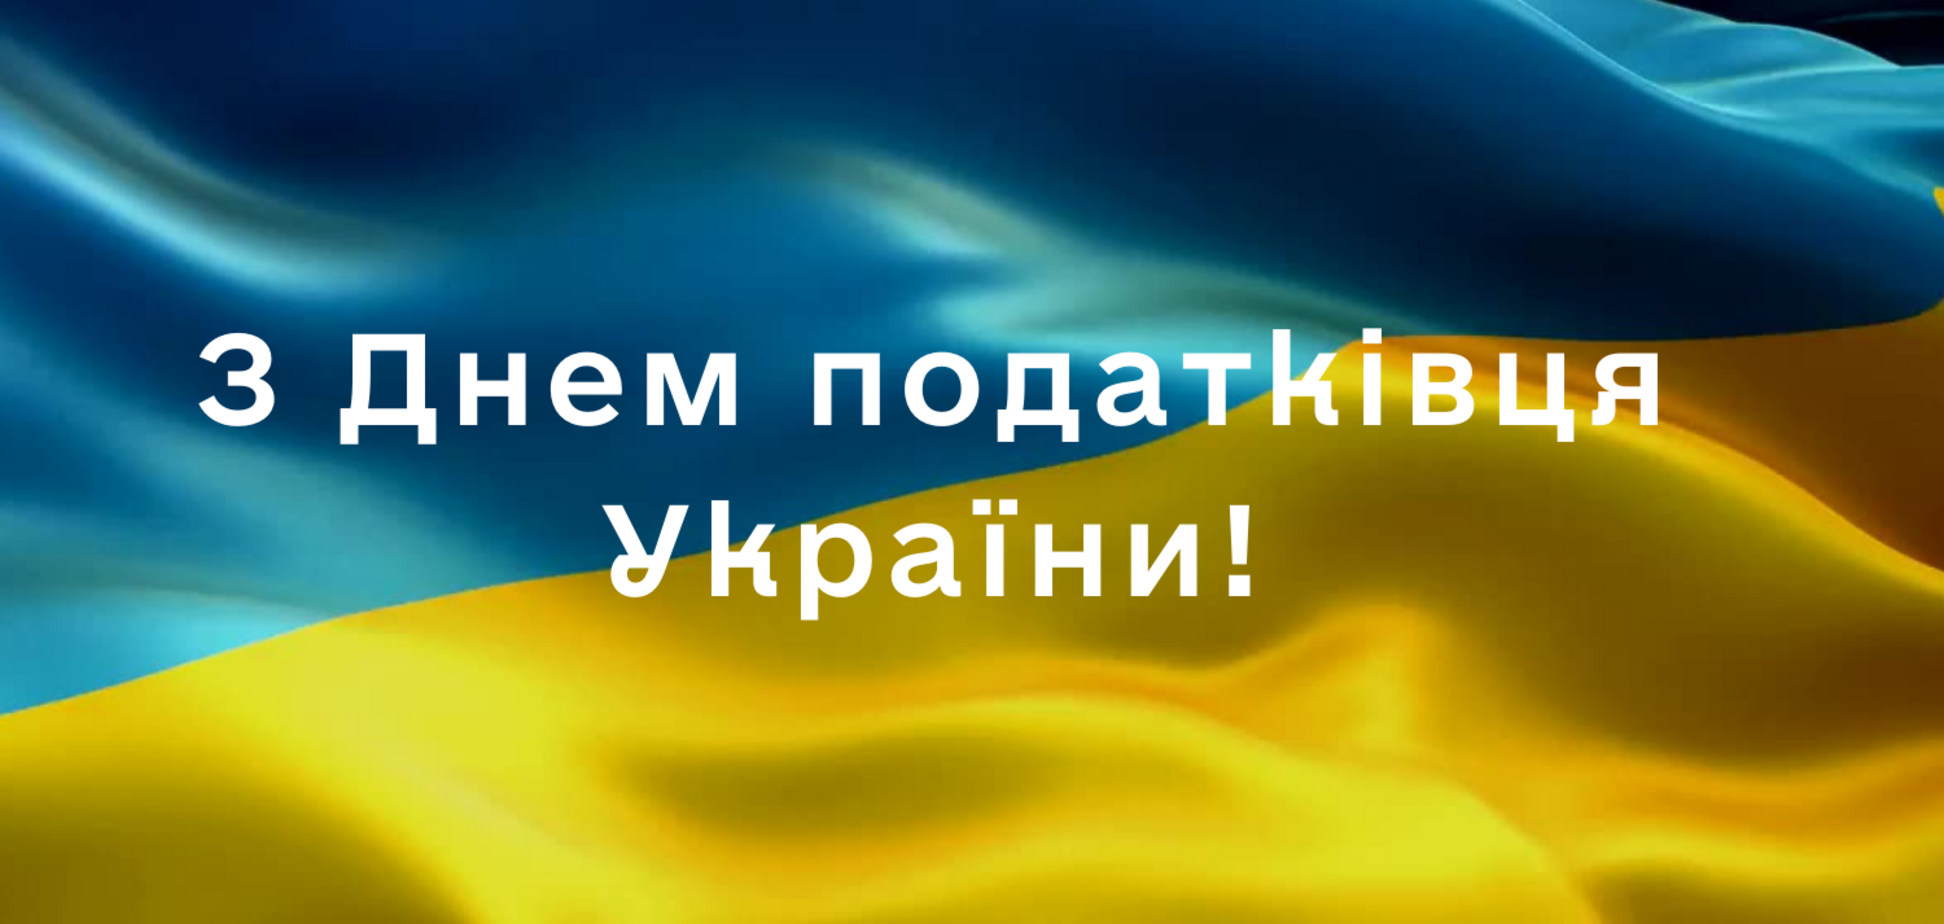 День налоговика Украины 2022: прикольные открытки и поздравления